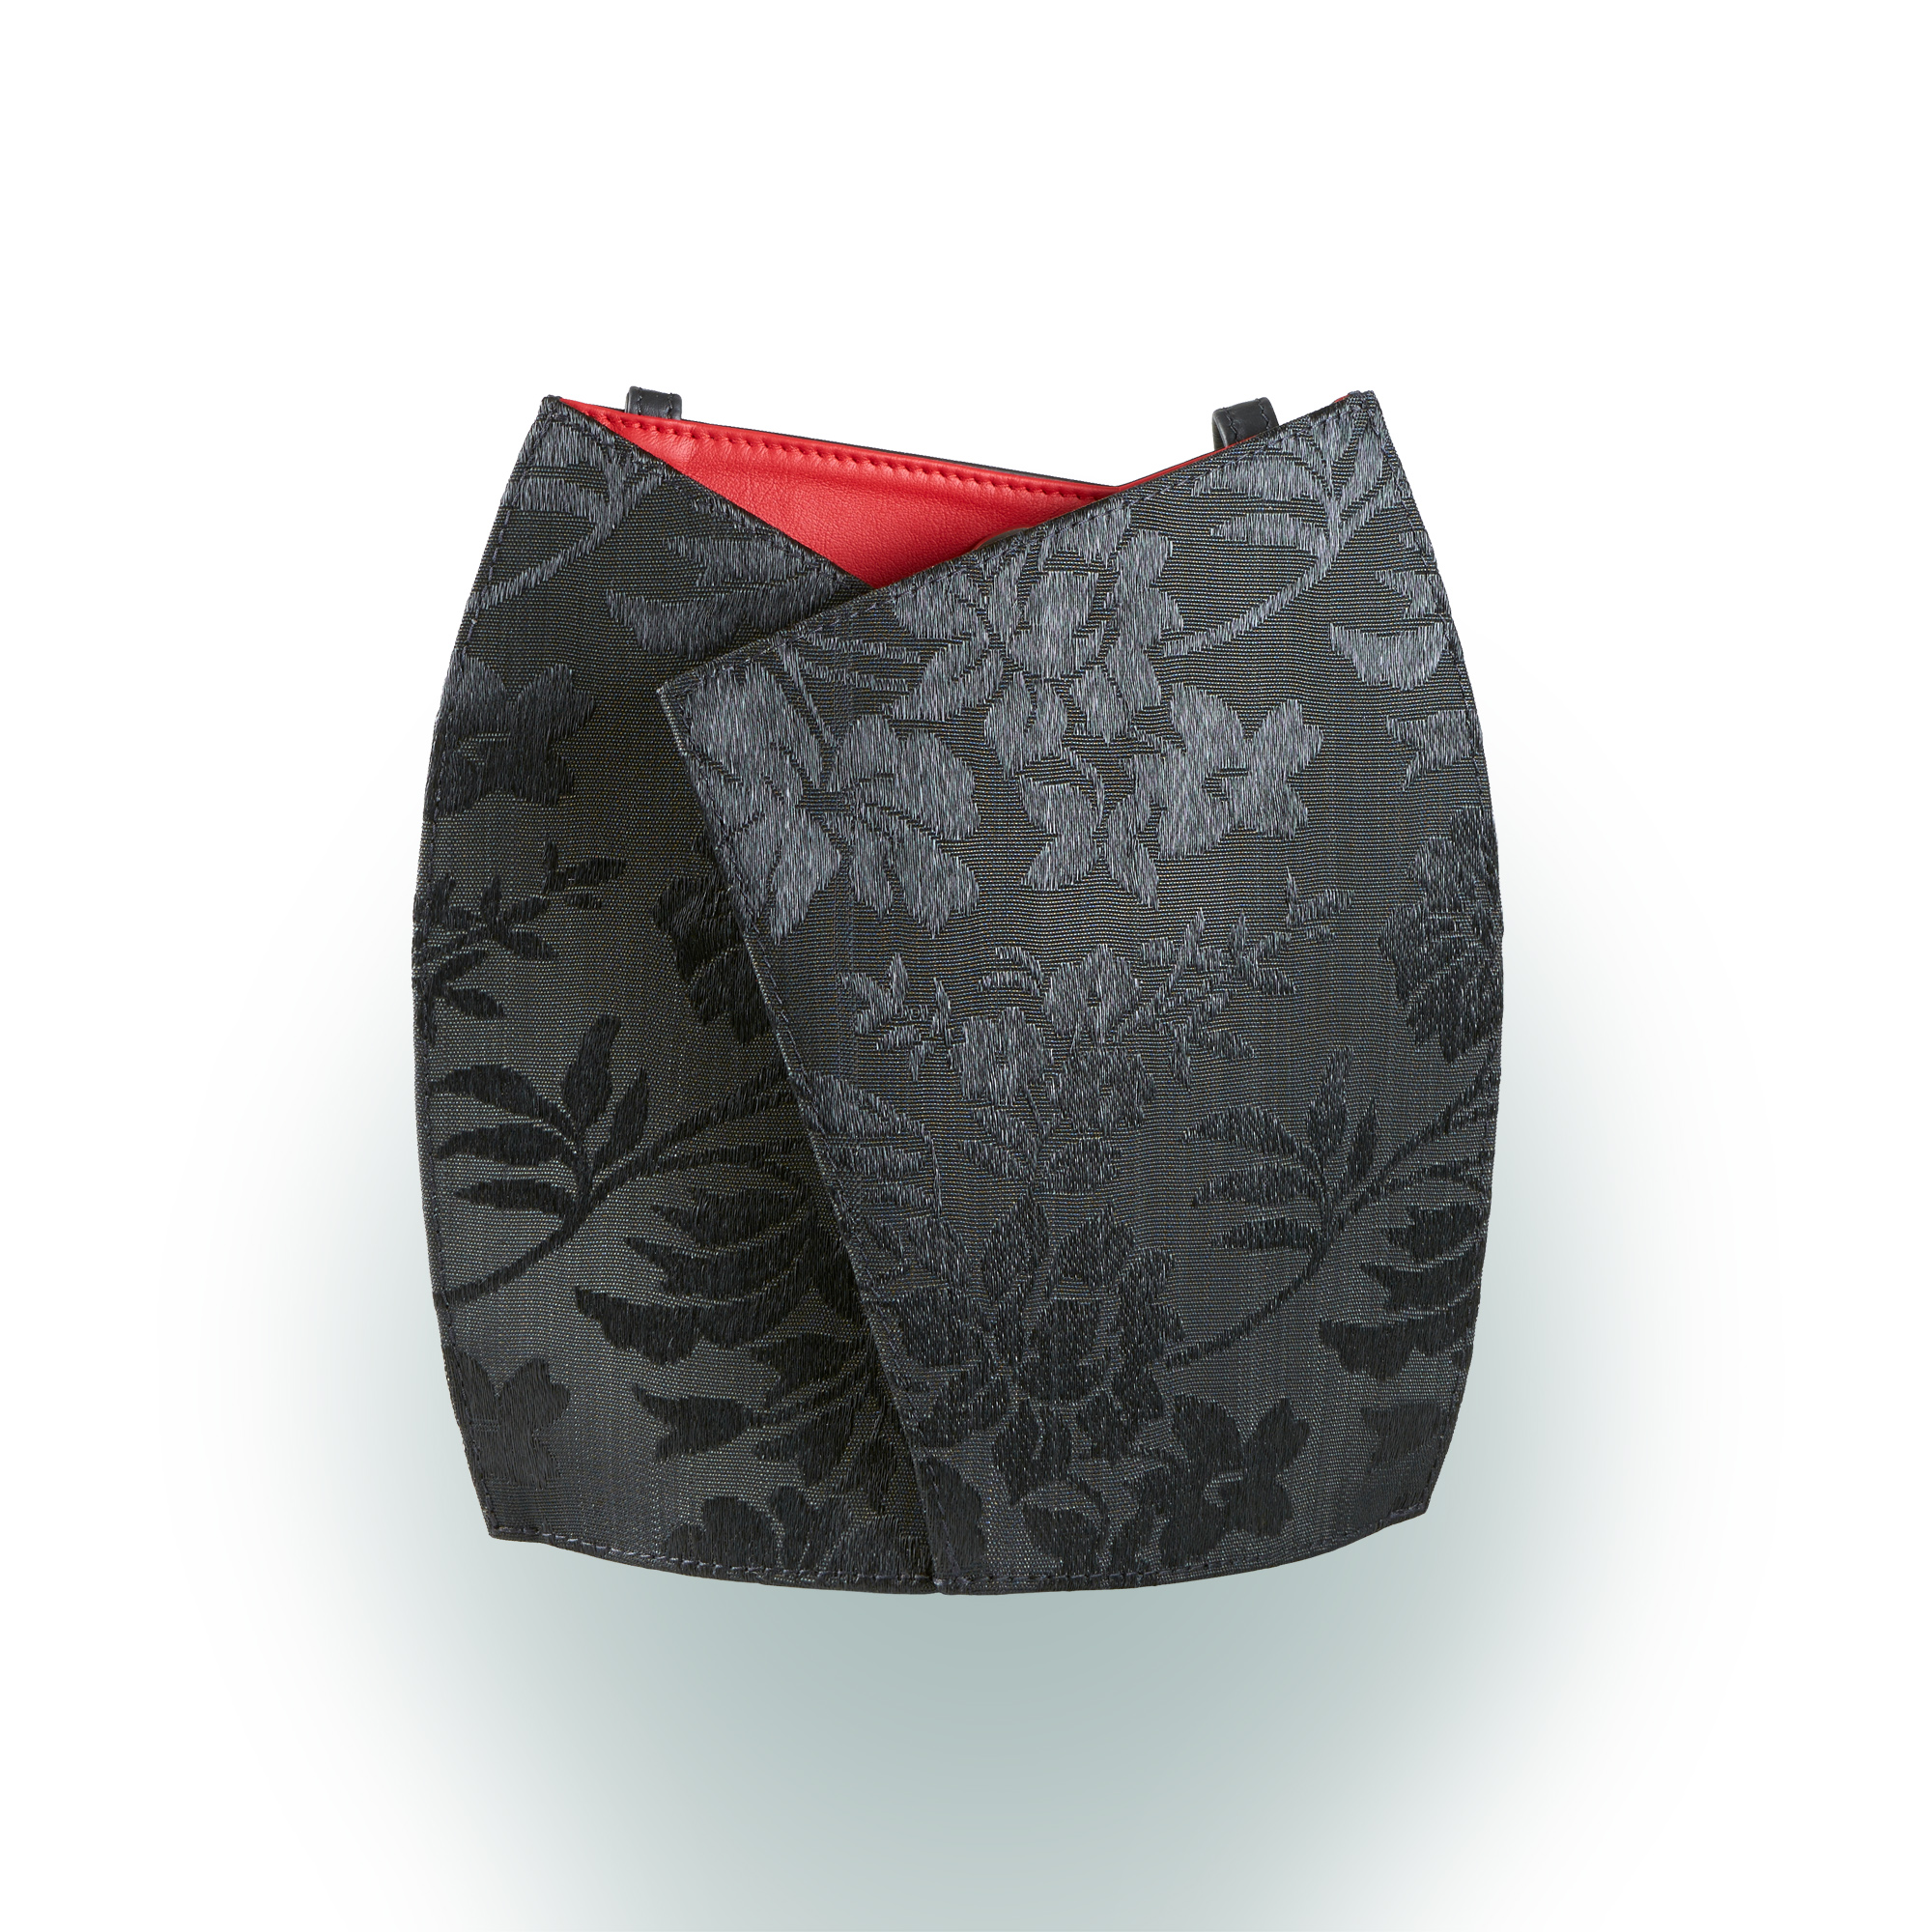 Olbrish Handtasche Kimono, Rosshaar Blumenmuster und Nappaleder Rot, Vorderwand bei offener Tasche